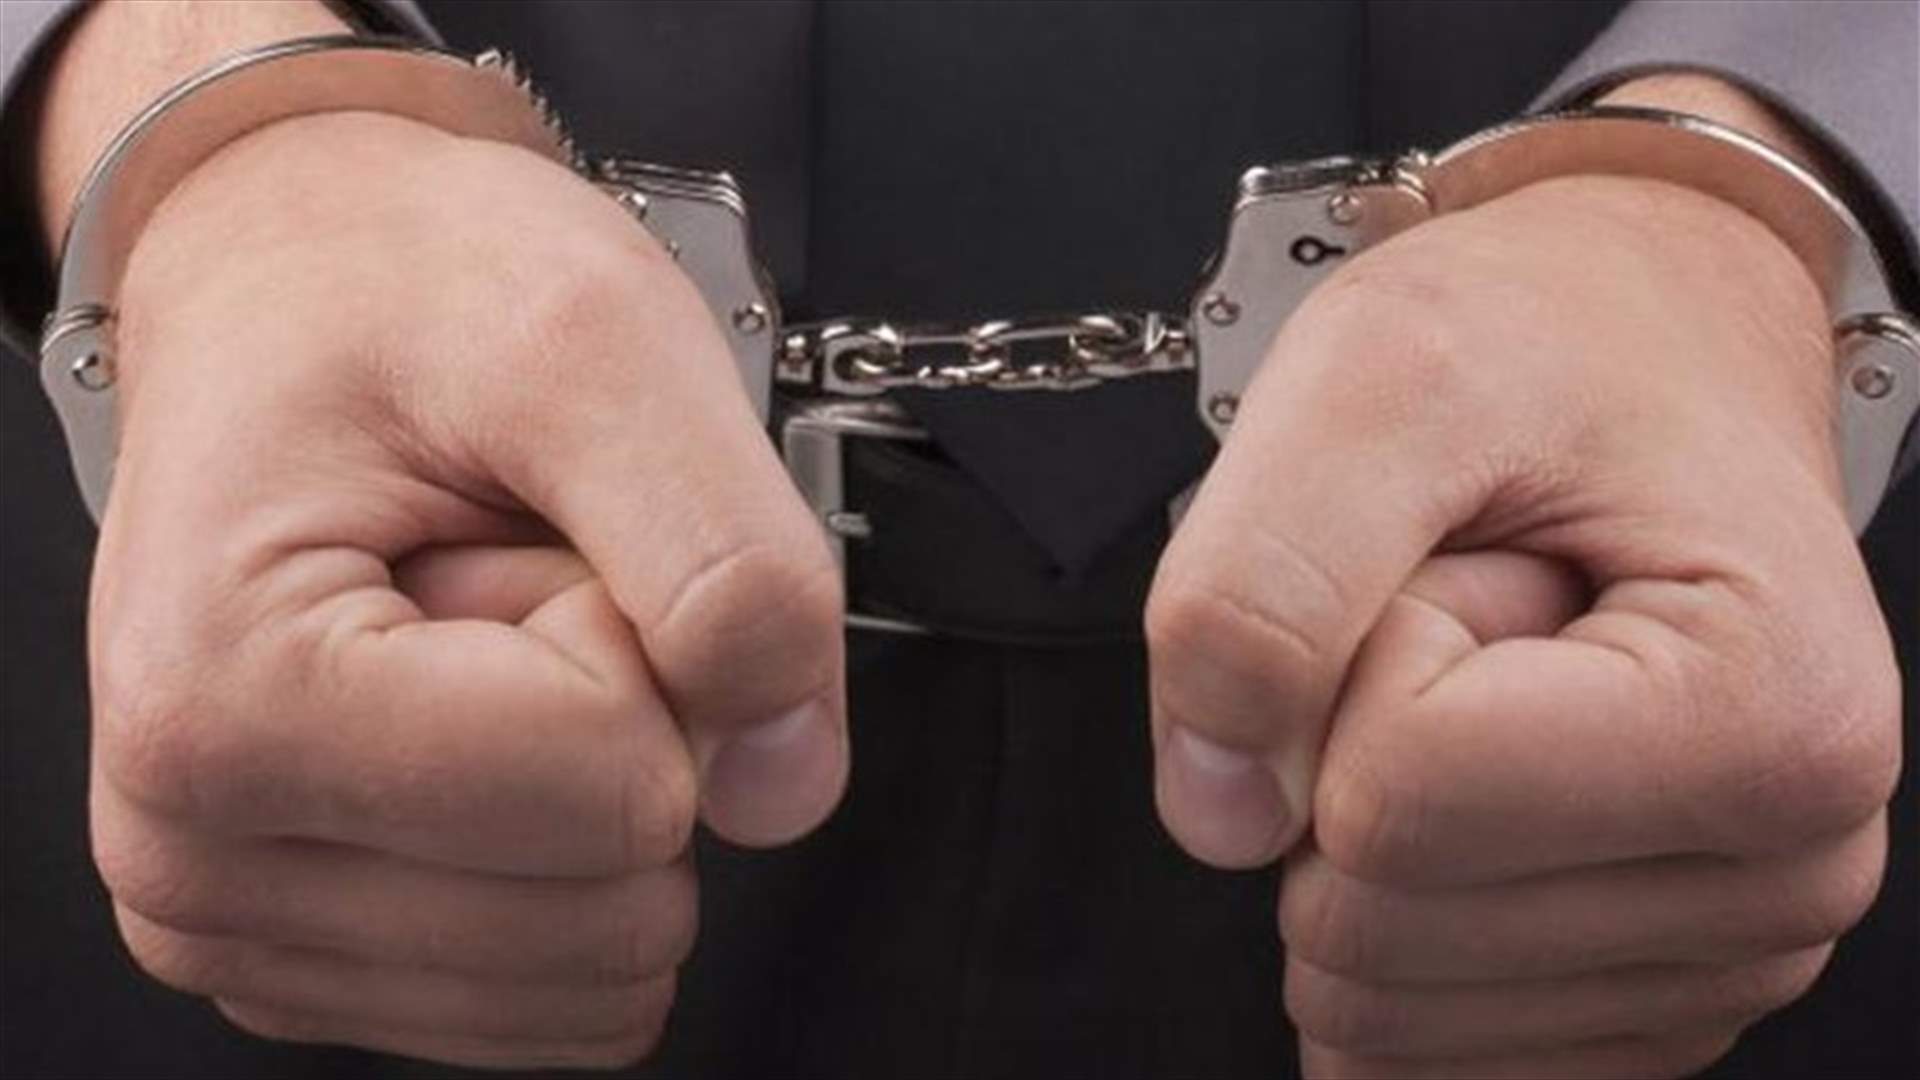 Seven men arrested following a dispute in Koura